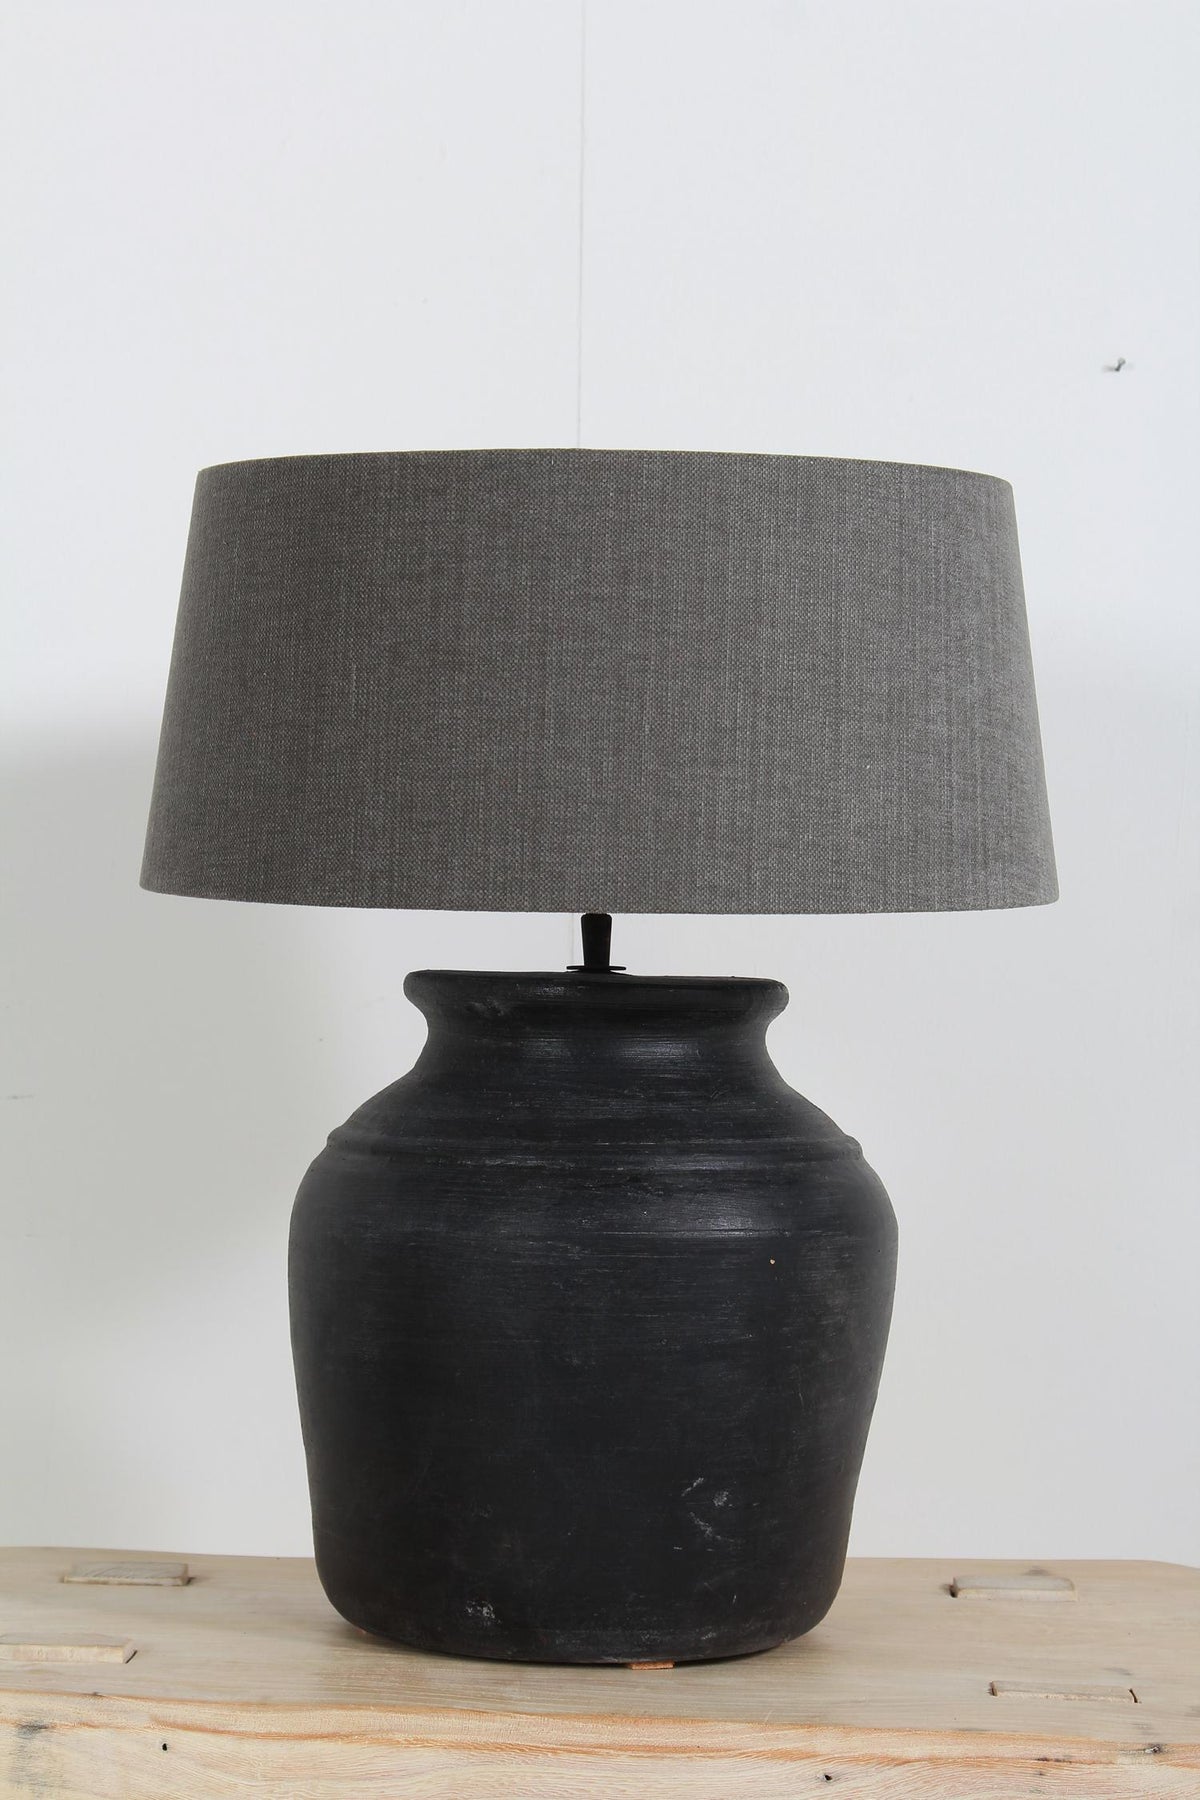 Stylish Black Ceramic Vase Lamp with Grey Linen  Shade